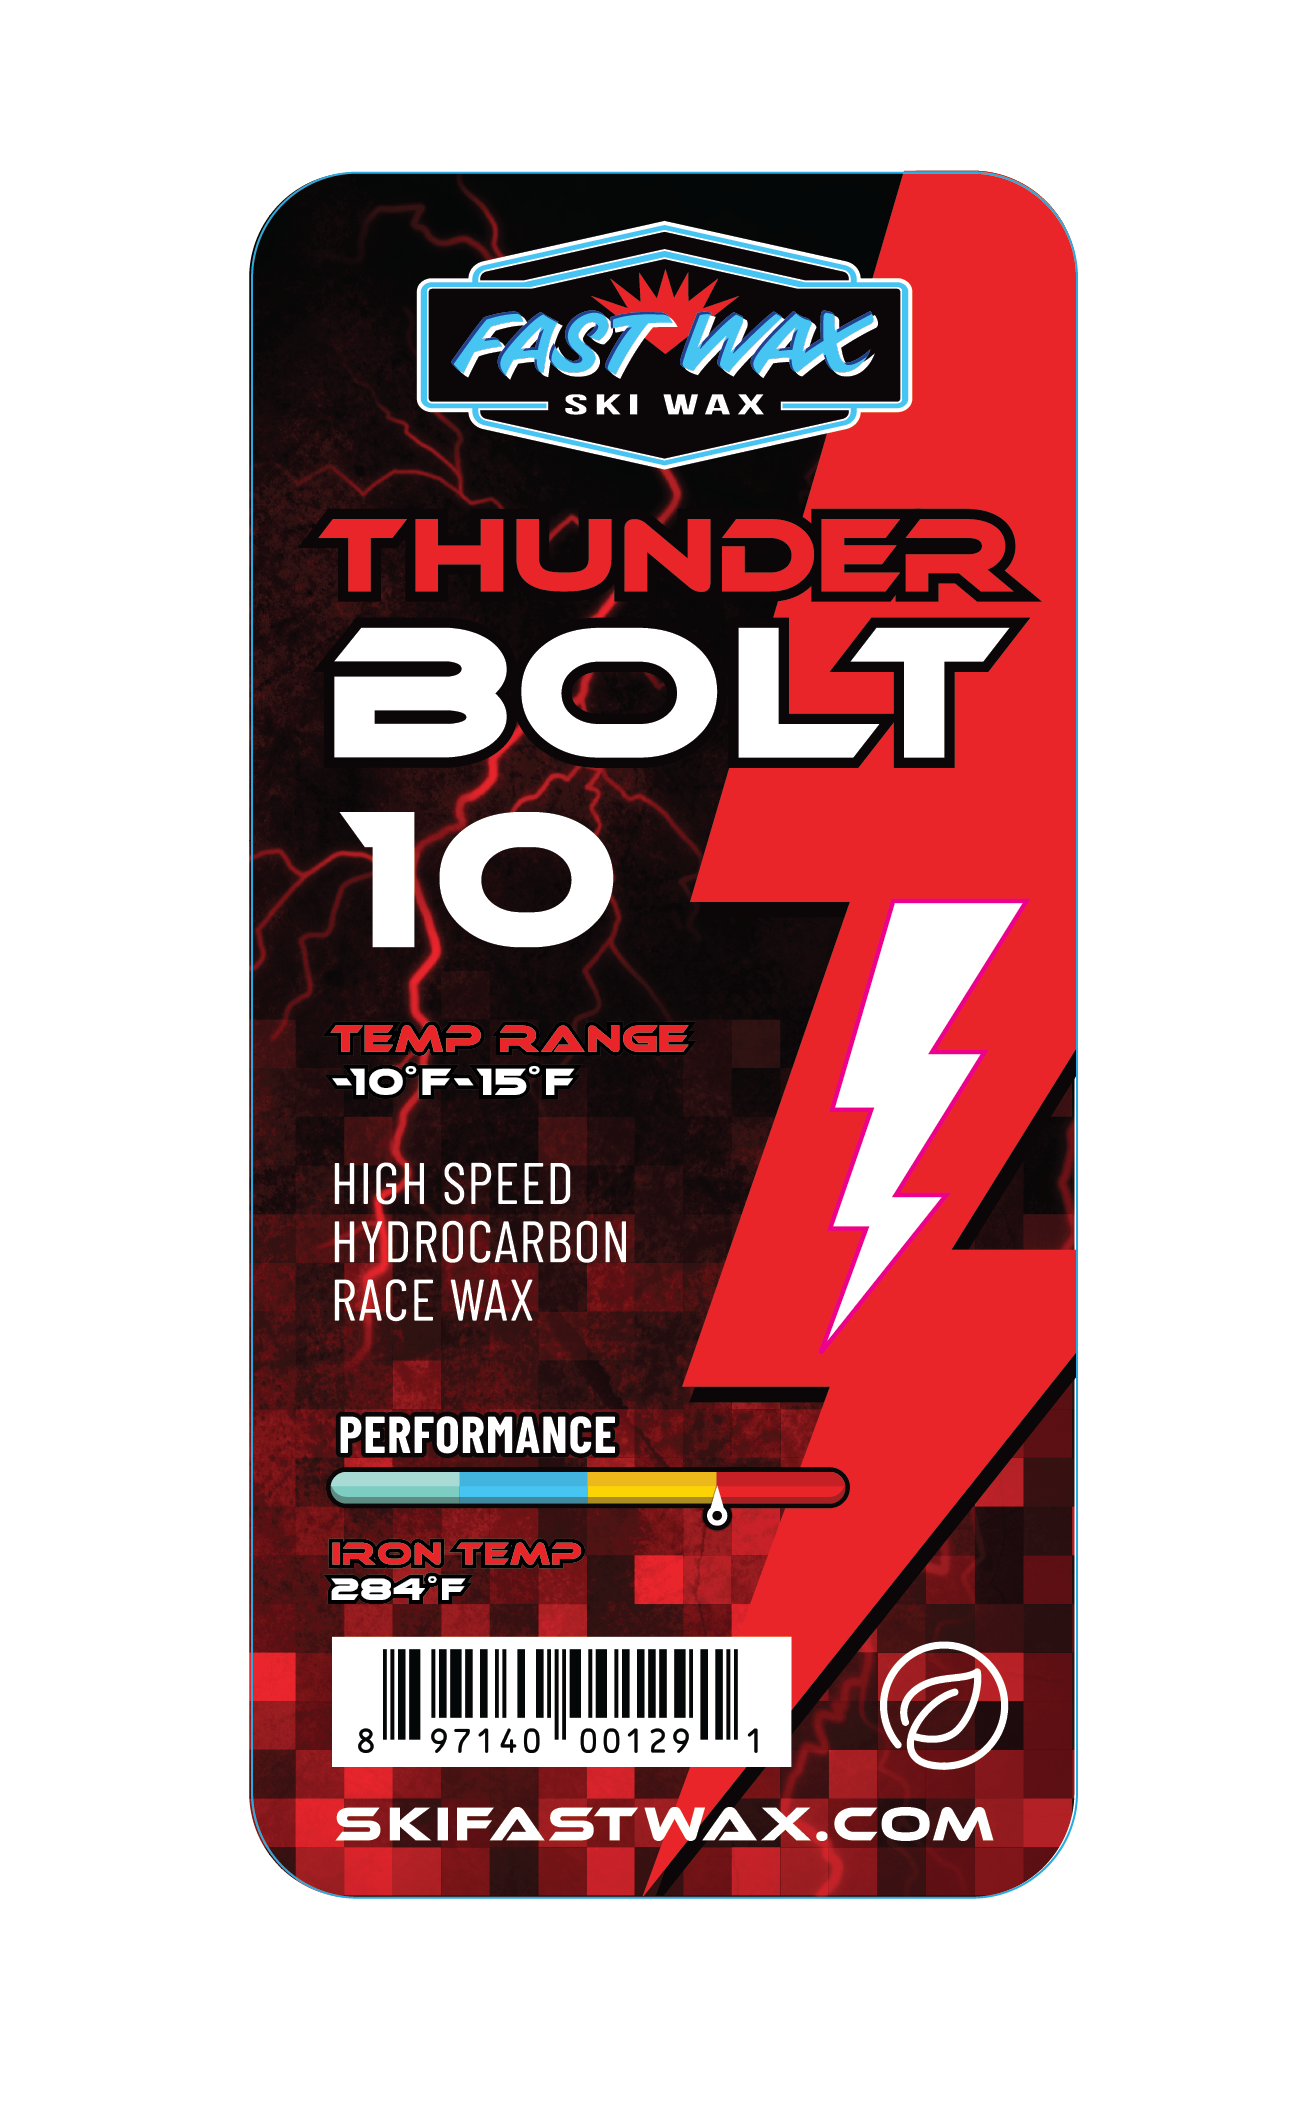 Thunderbolt 10 - Green